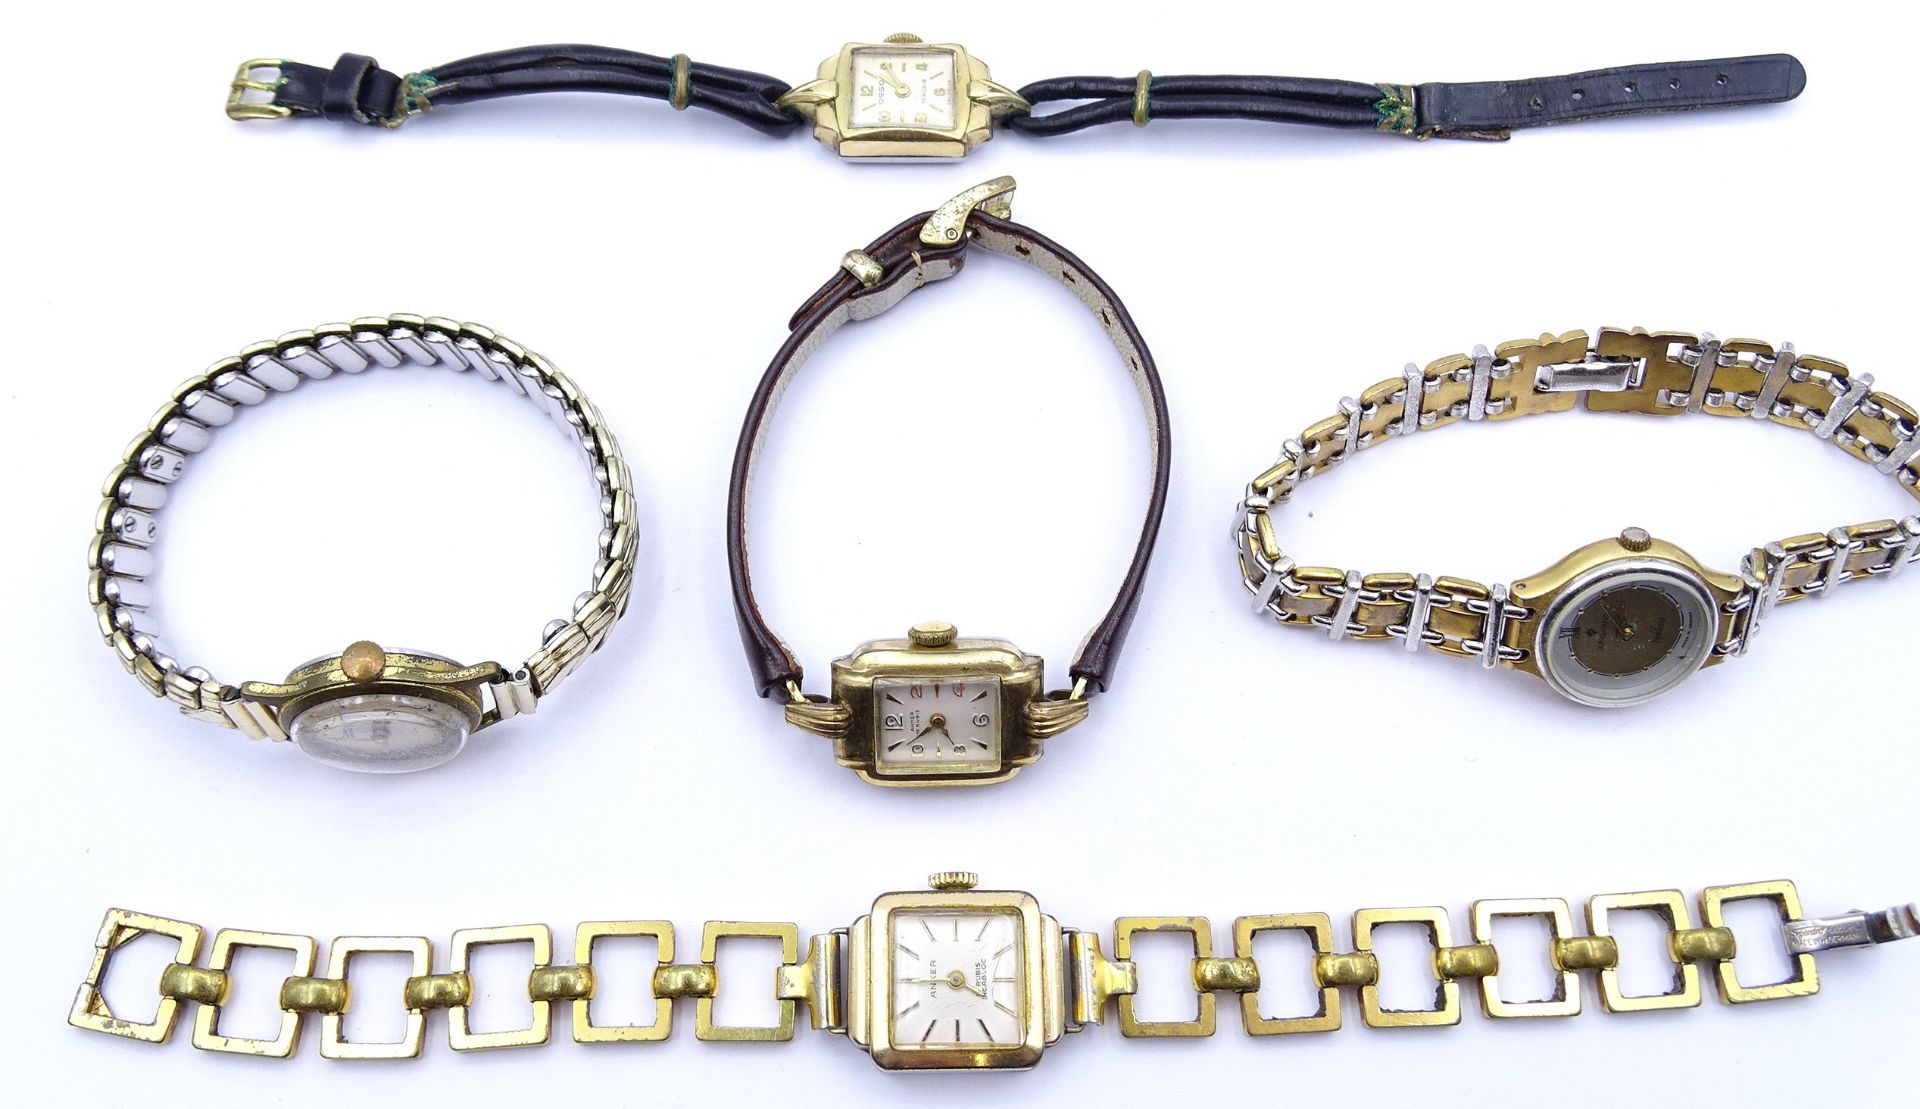 5x Damen Armbanduhren, mechanisch und Quartz, 2x Uhren laufen, Alters- und Gebrauchsspuren - Bild 4 aus 4